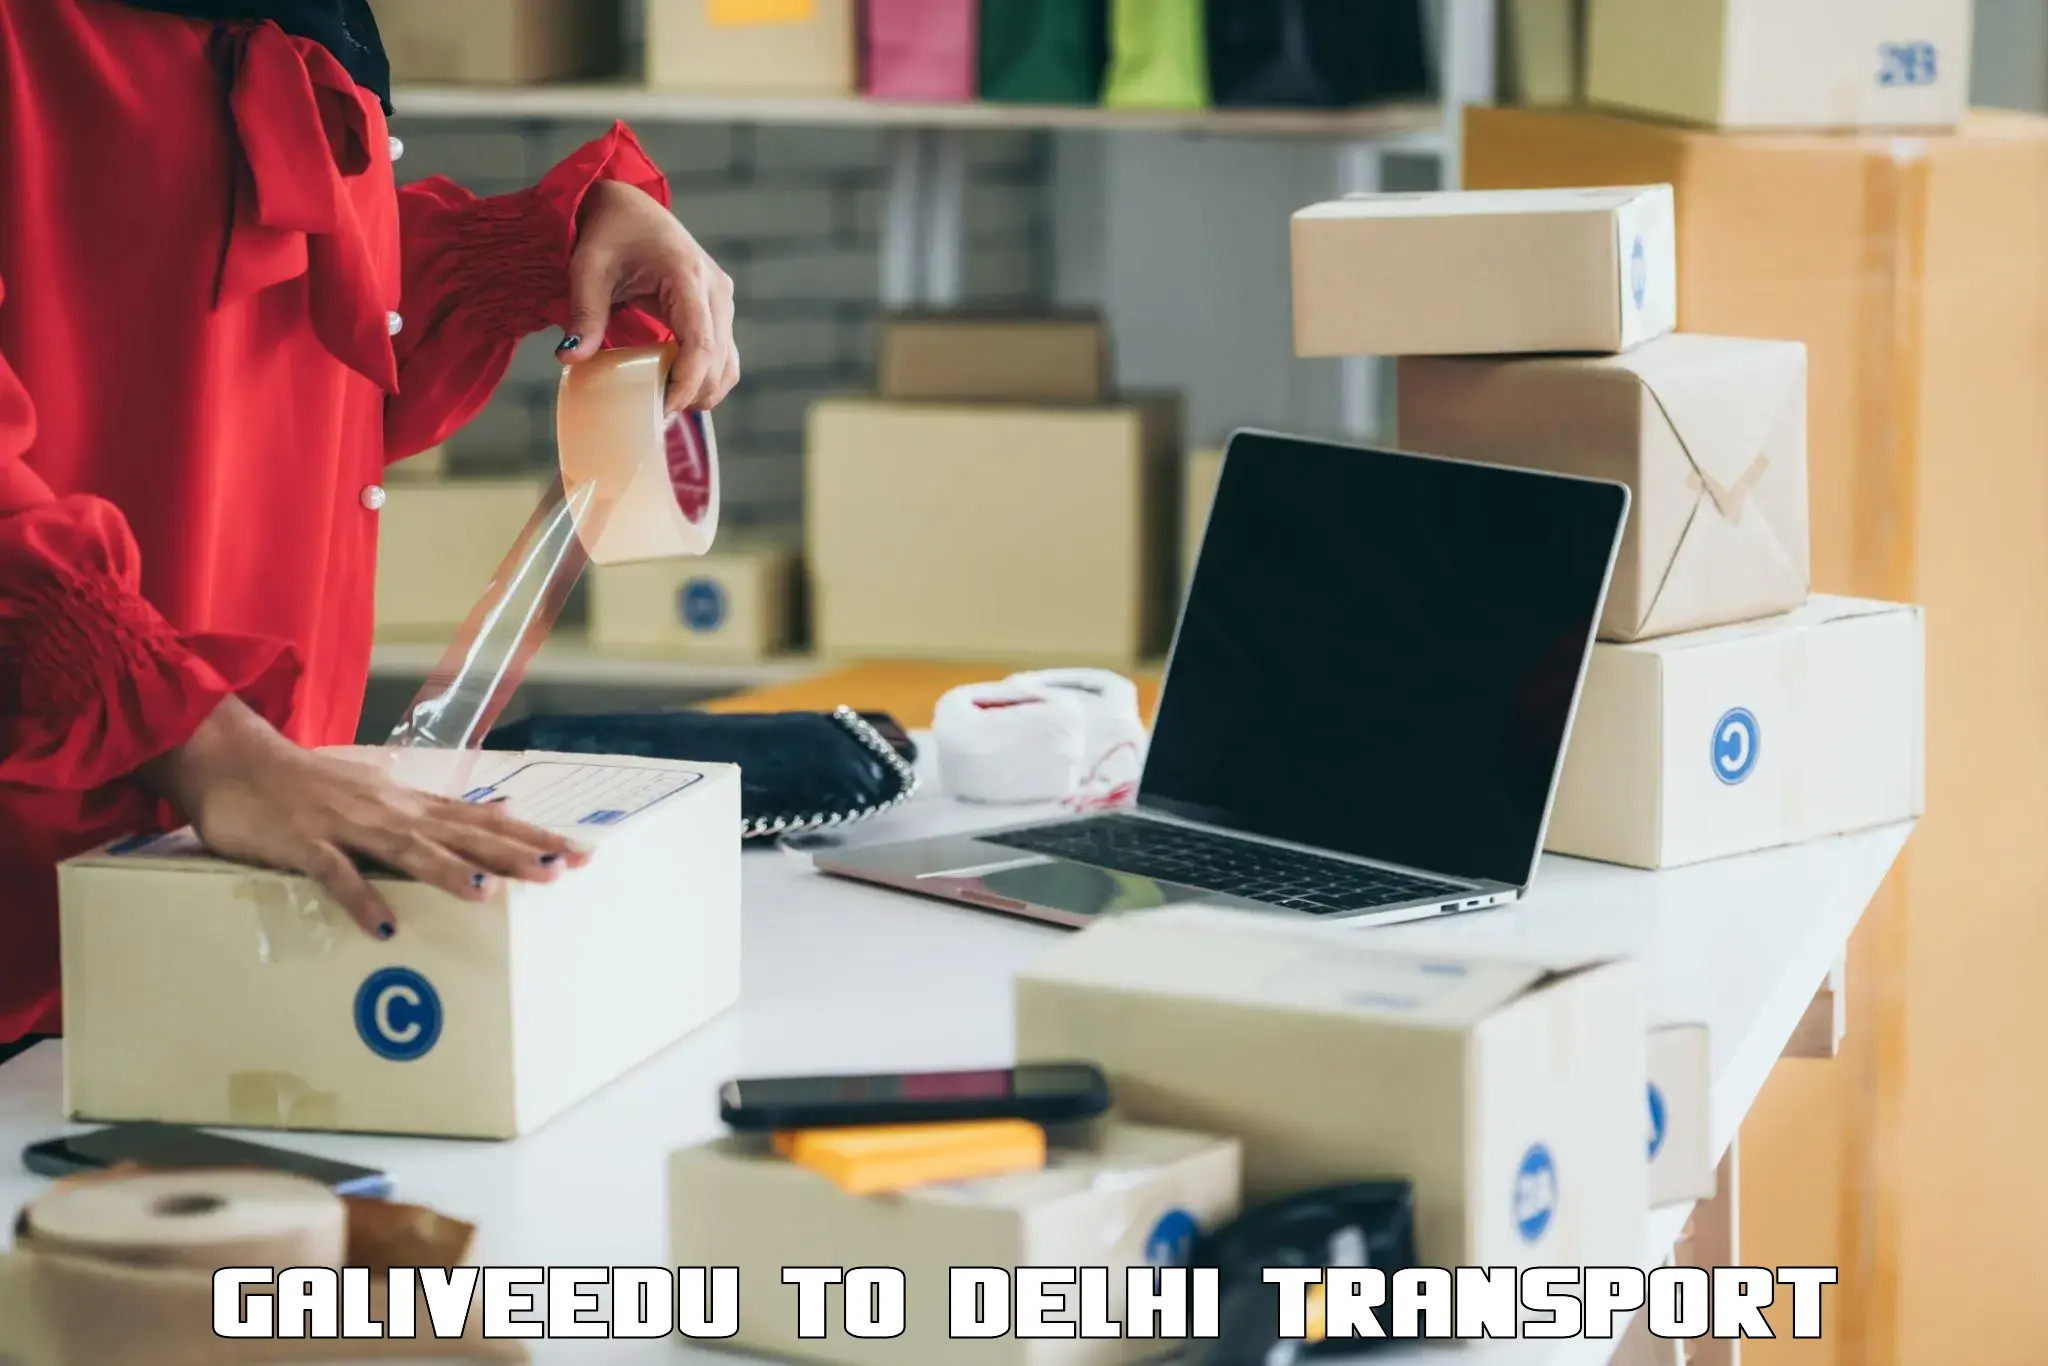 Lorry transport service Galiveedu to Delhi